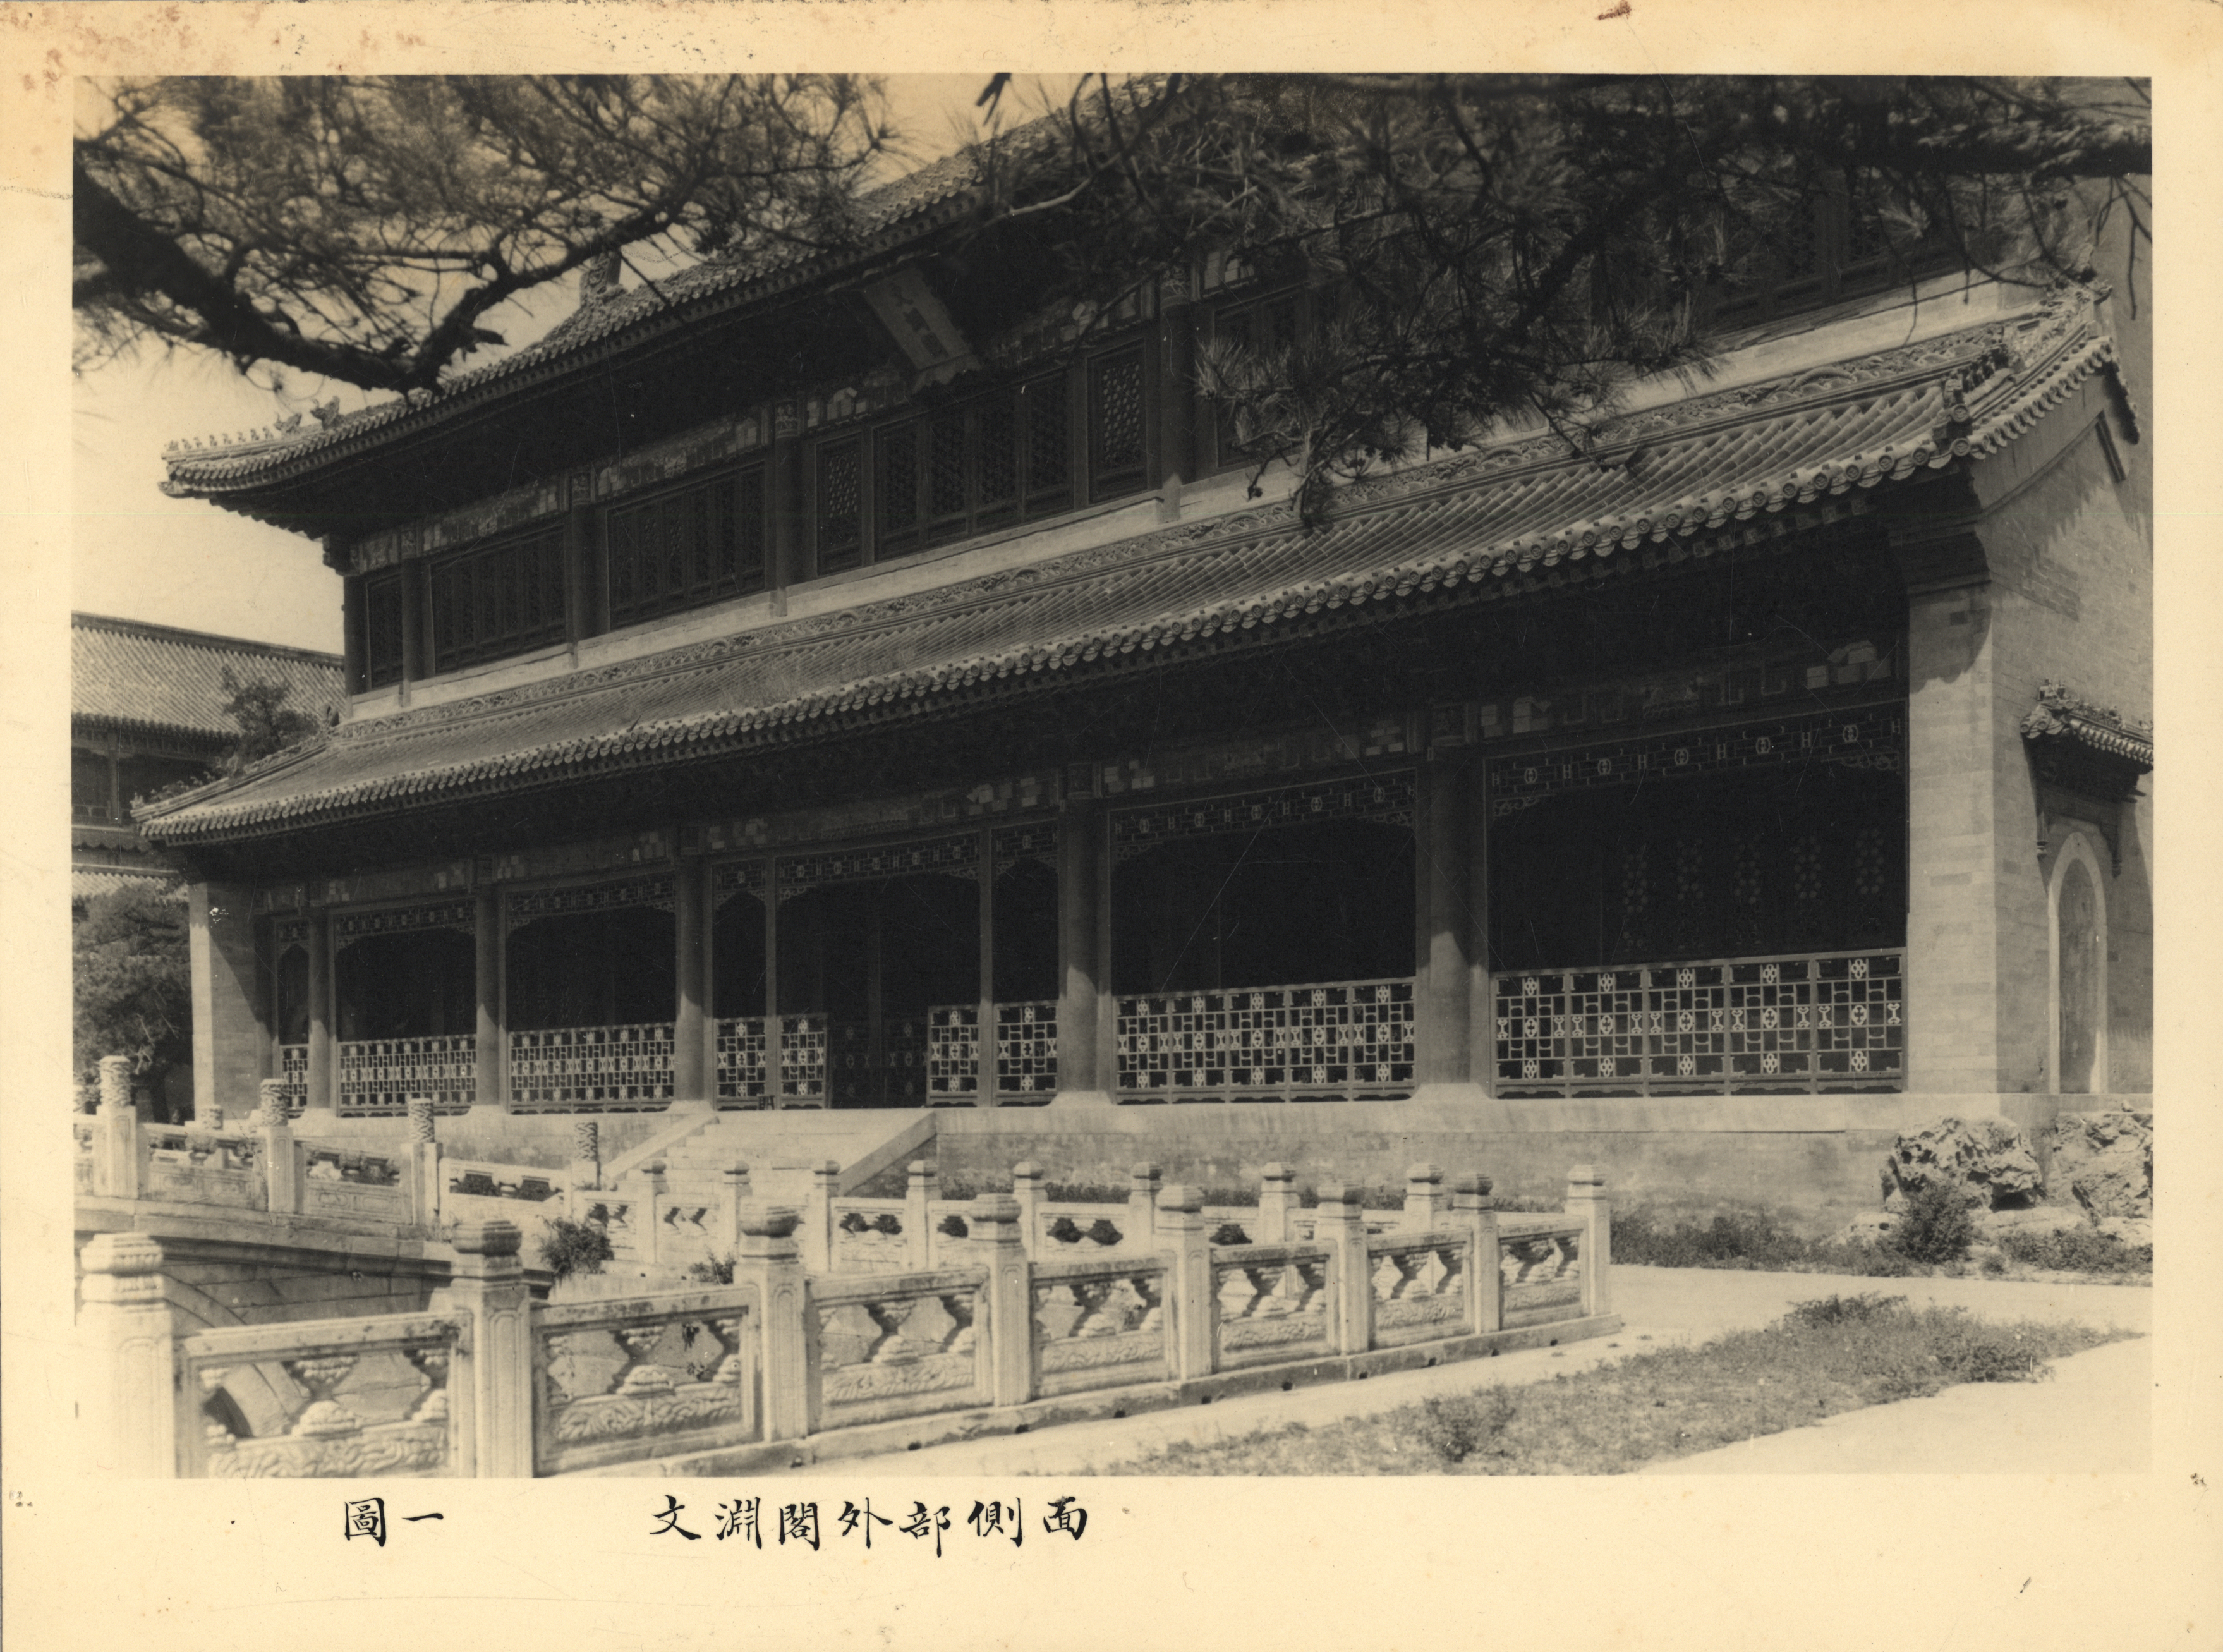 The Wenyuange Pavilion